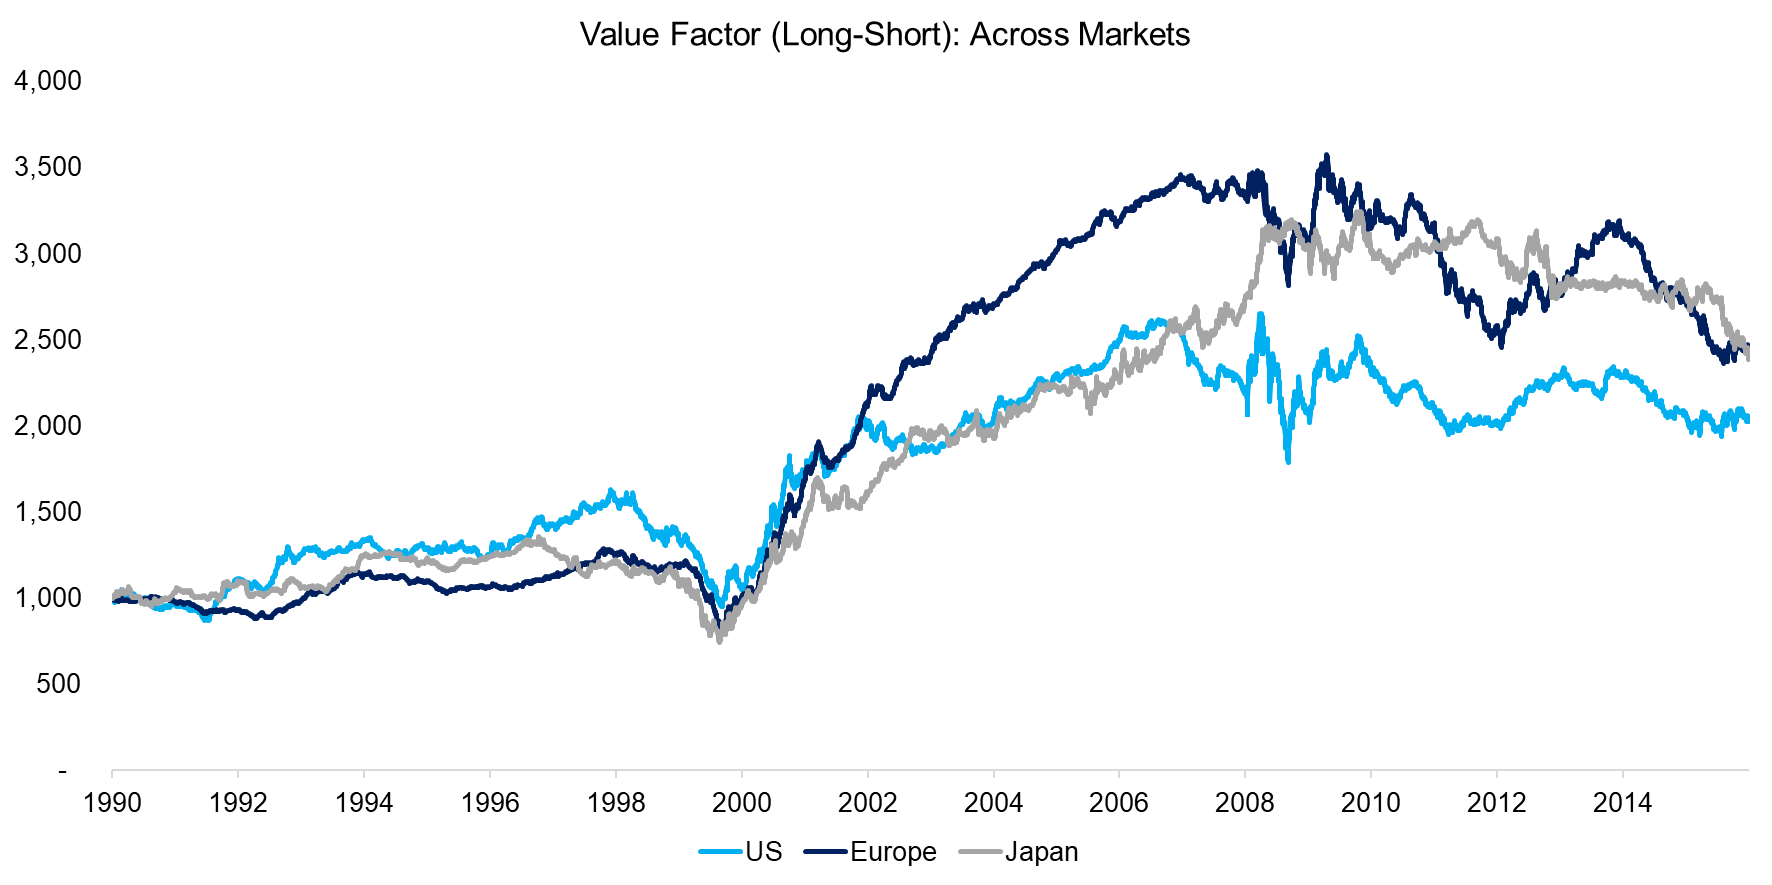 Value Factor (Long-Short) Across Markets